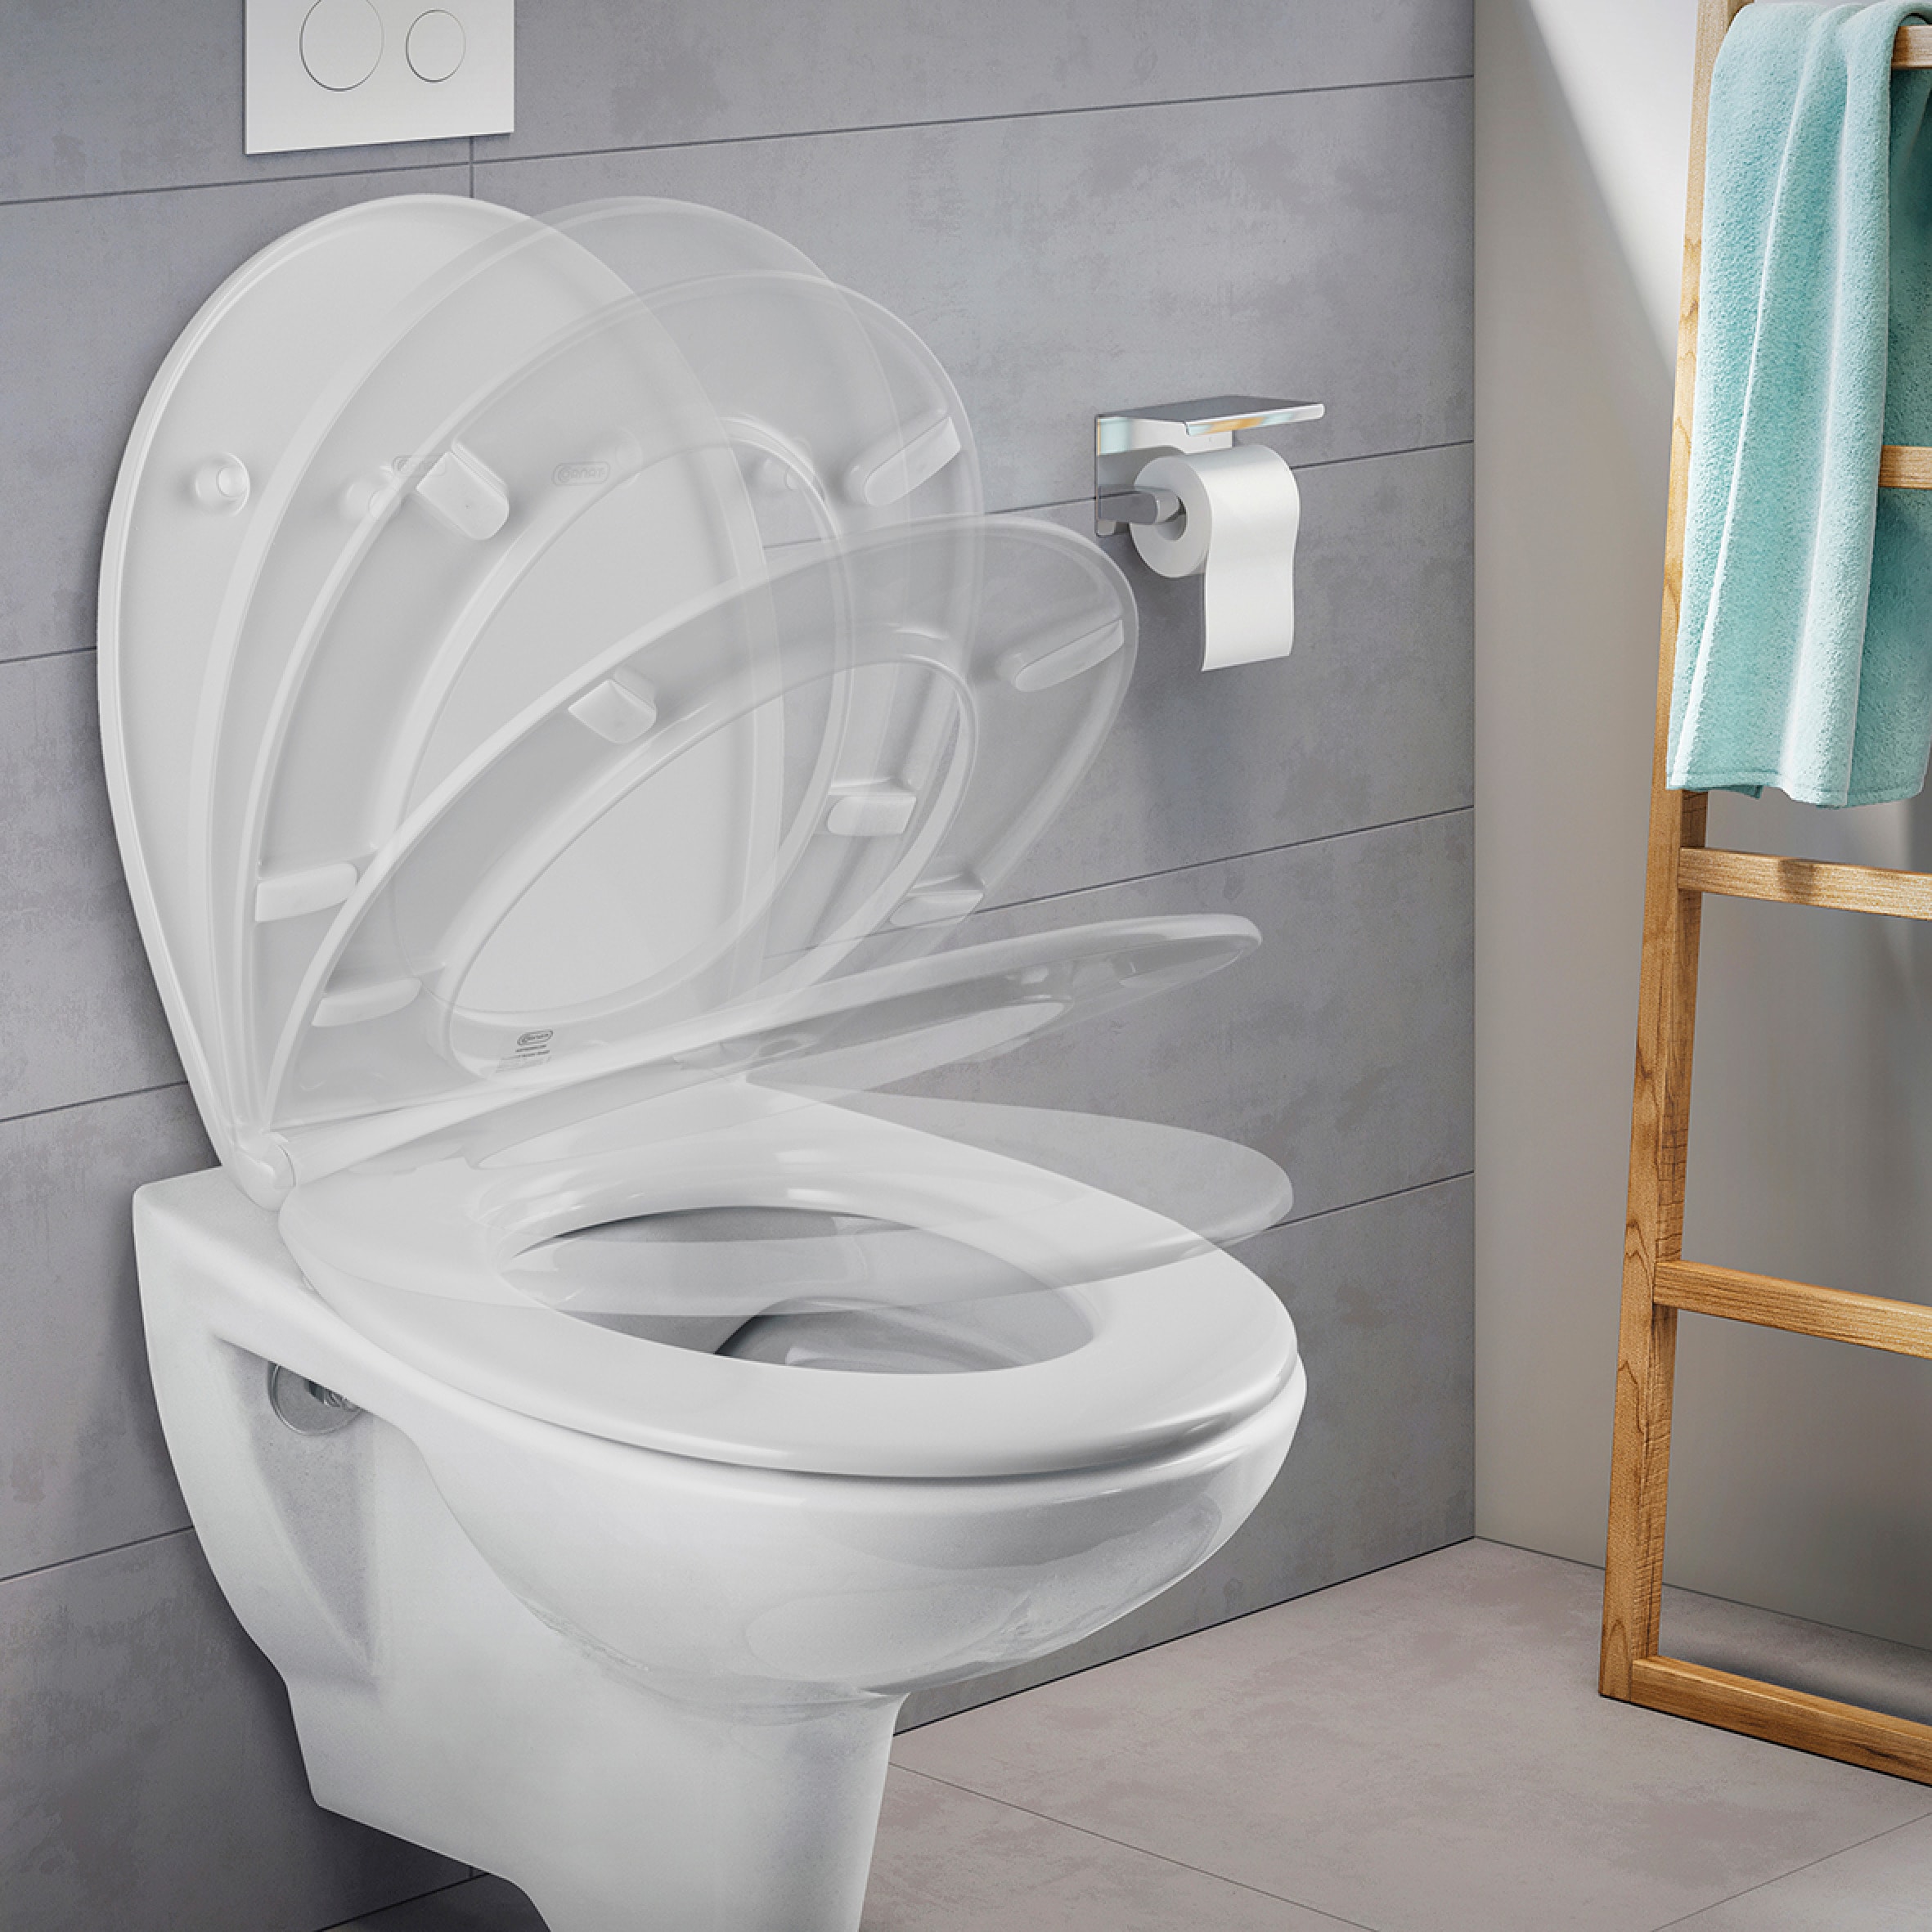 CORNAT WC-Sitz »Flaches Design - Pflegeleichter Duroplast - Quick up«, Clean Funktion - Absenkautomatik - Montage von oben / Toilettensitz